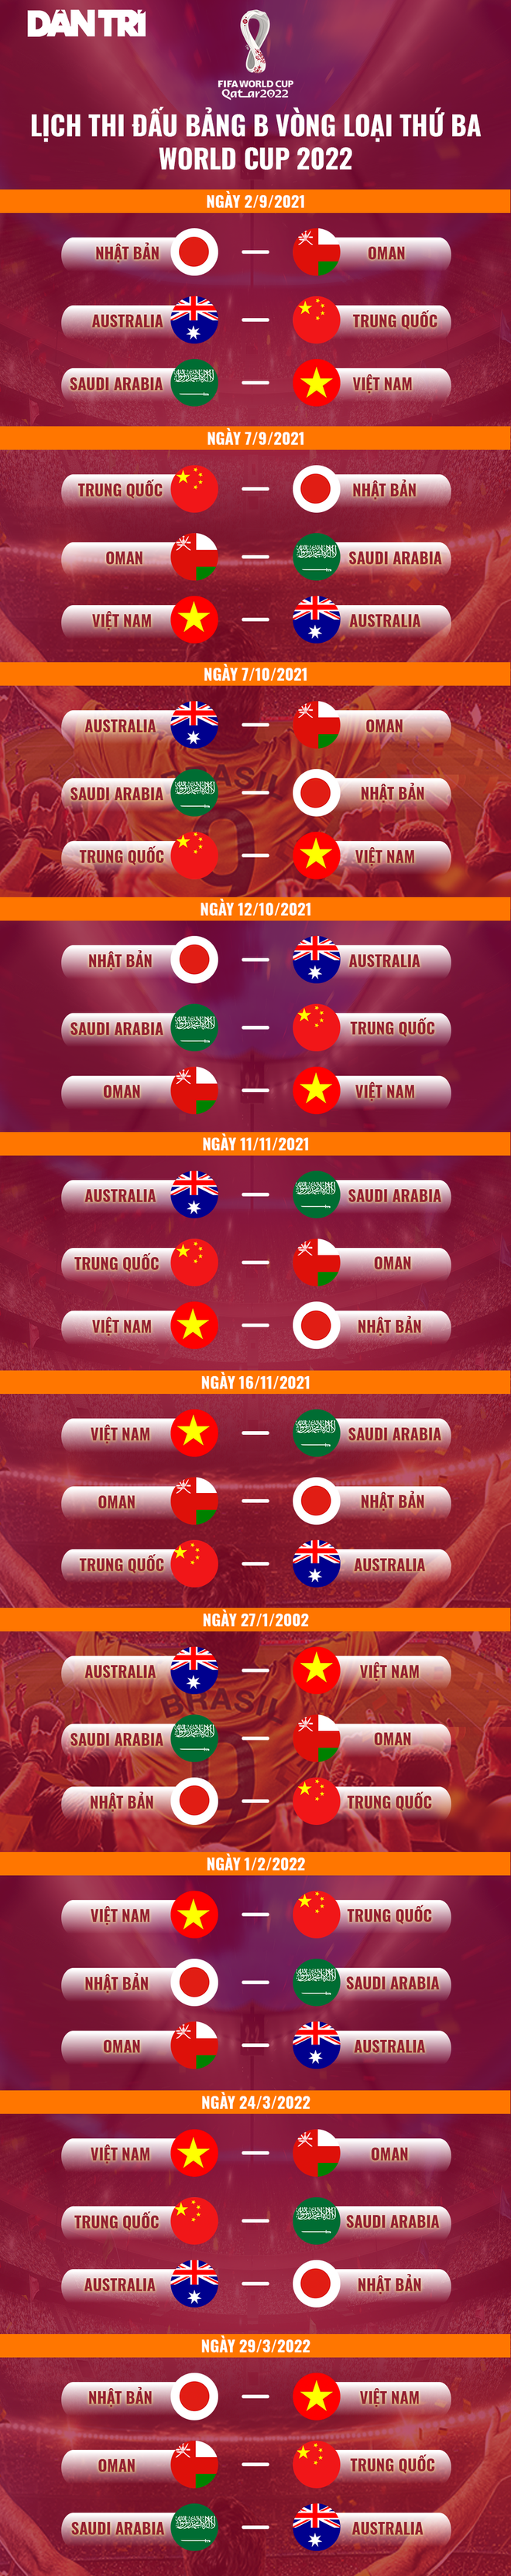 Đội tuyển Việt Nam đổi lịch di chuyển và giờ thi đấu với Saudi Arabia - 3